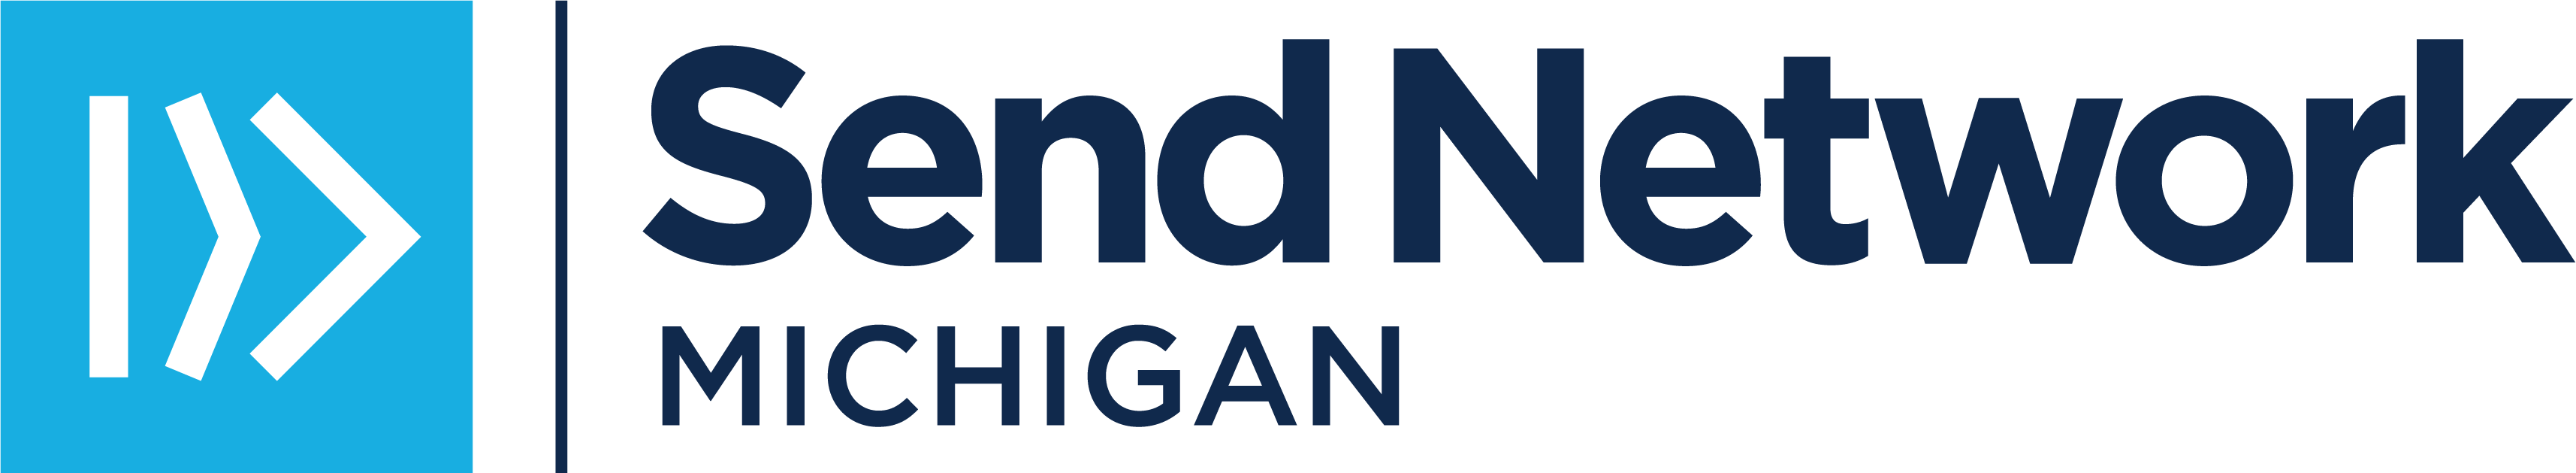 SN Michigan Logo_BlueNavy